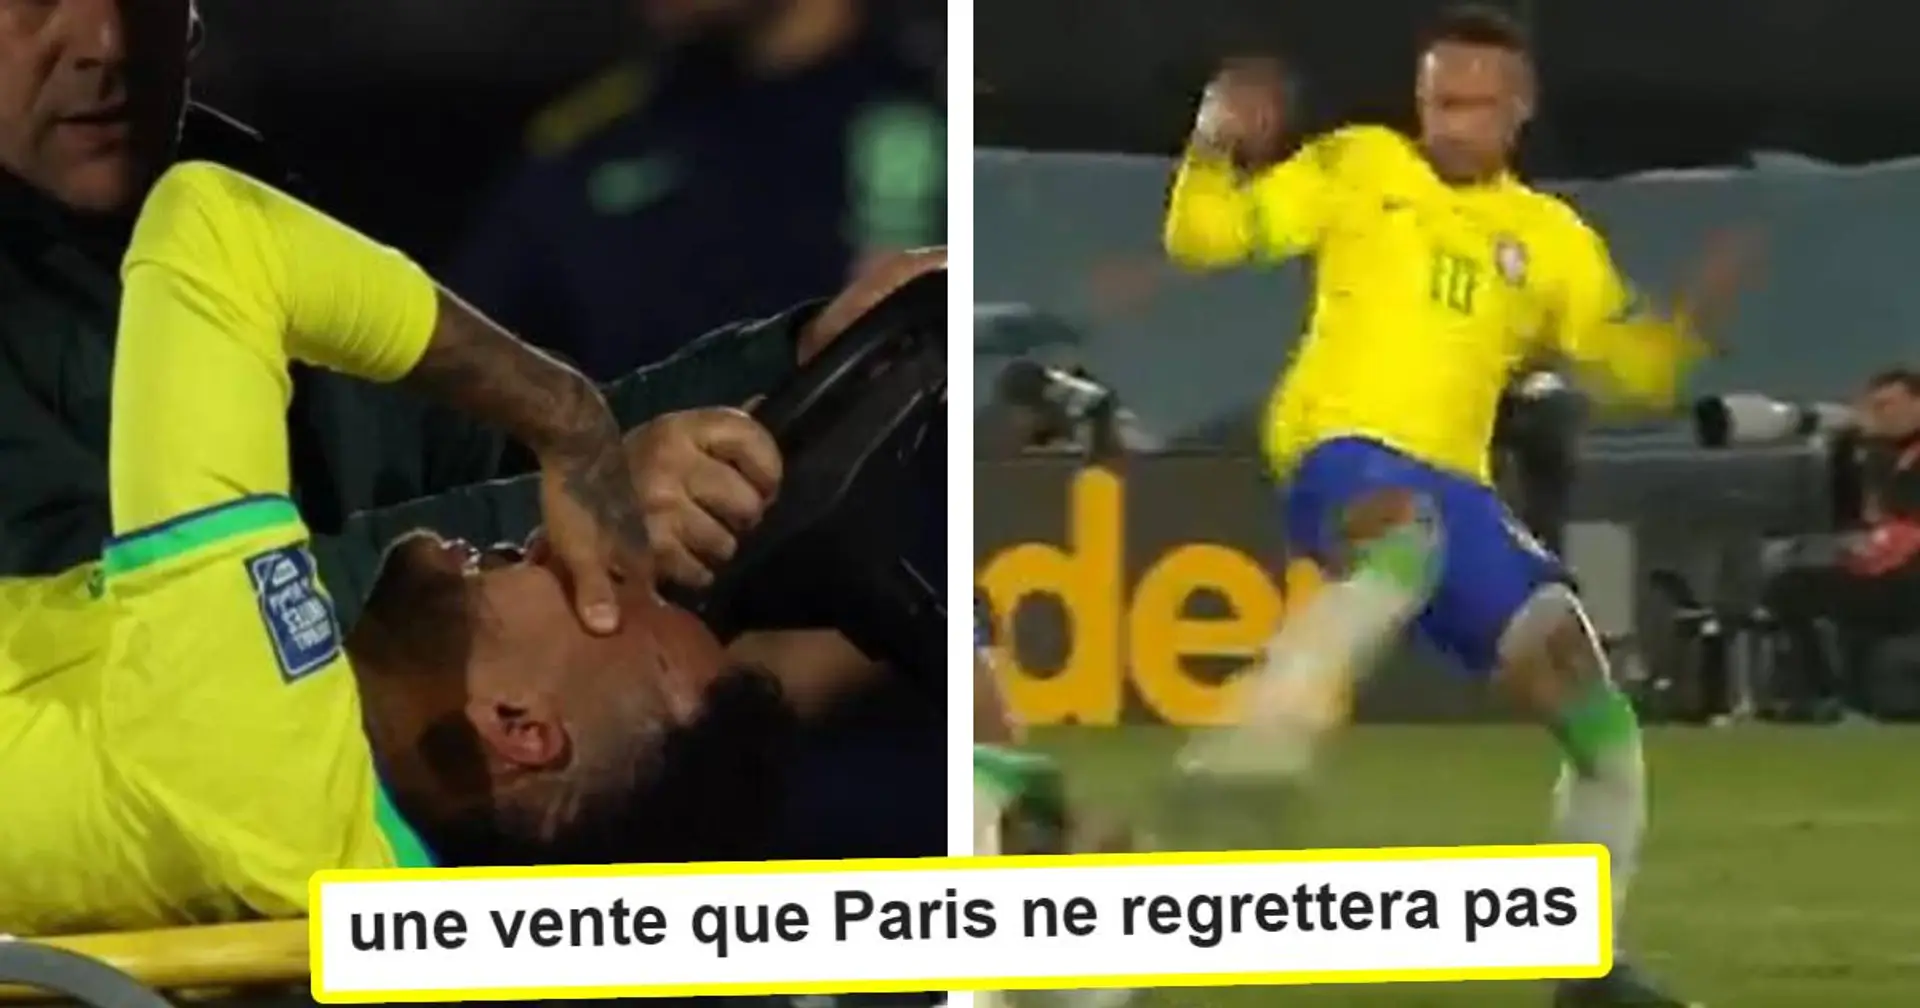 "Malheureux mais ce joueur-là n’existe plus depuis longtemps" : les fans réagissent à la énième blessure de Neymar